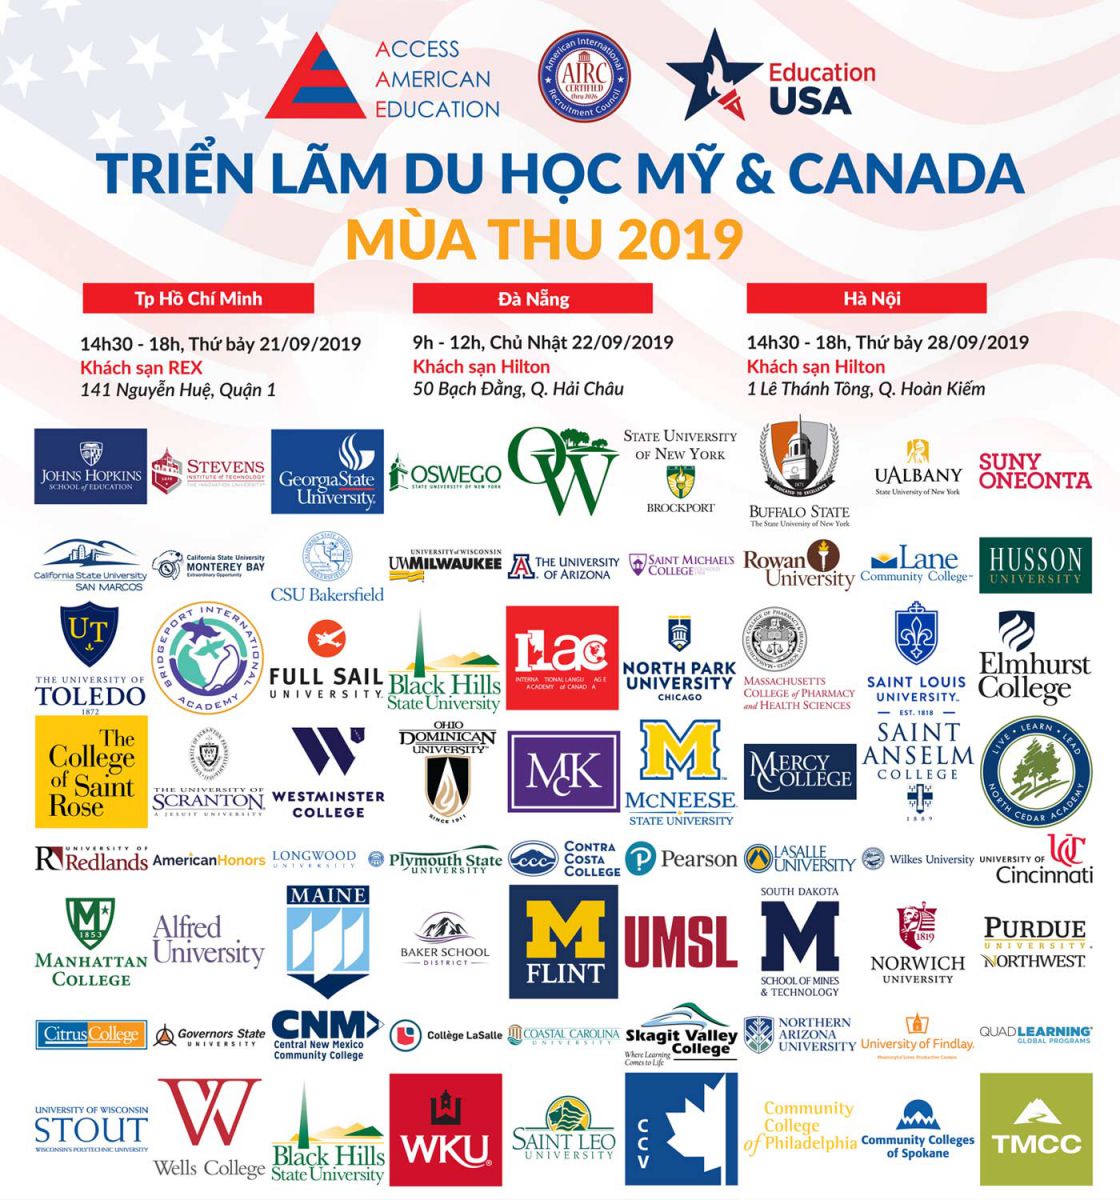 Triển lãm du học Mỹ và Canada toàn quốc mùa Thu 2019 - Ảnh 1